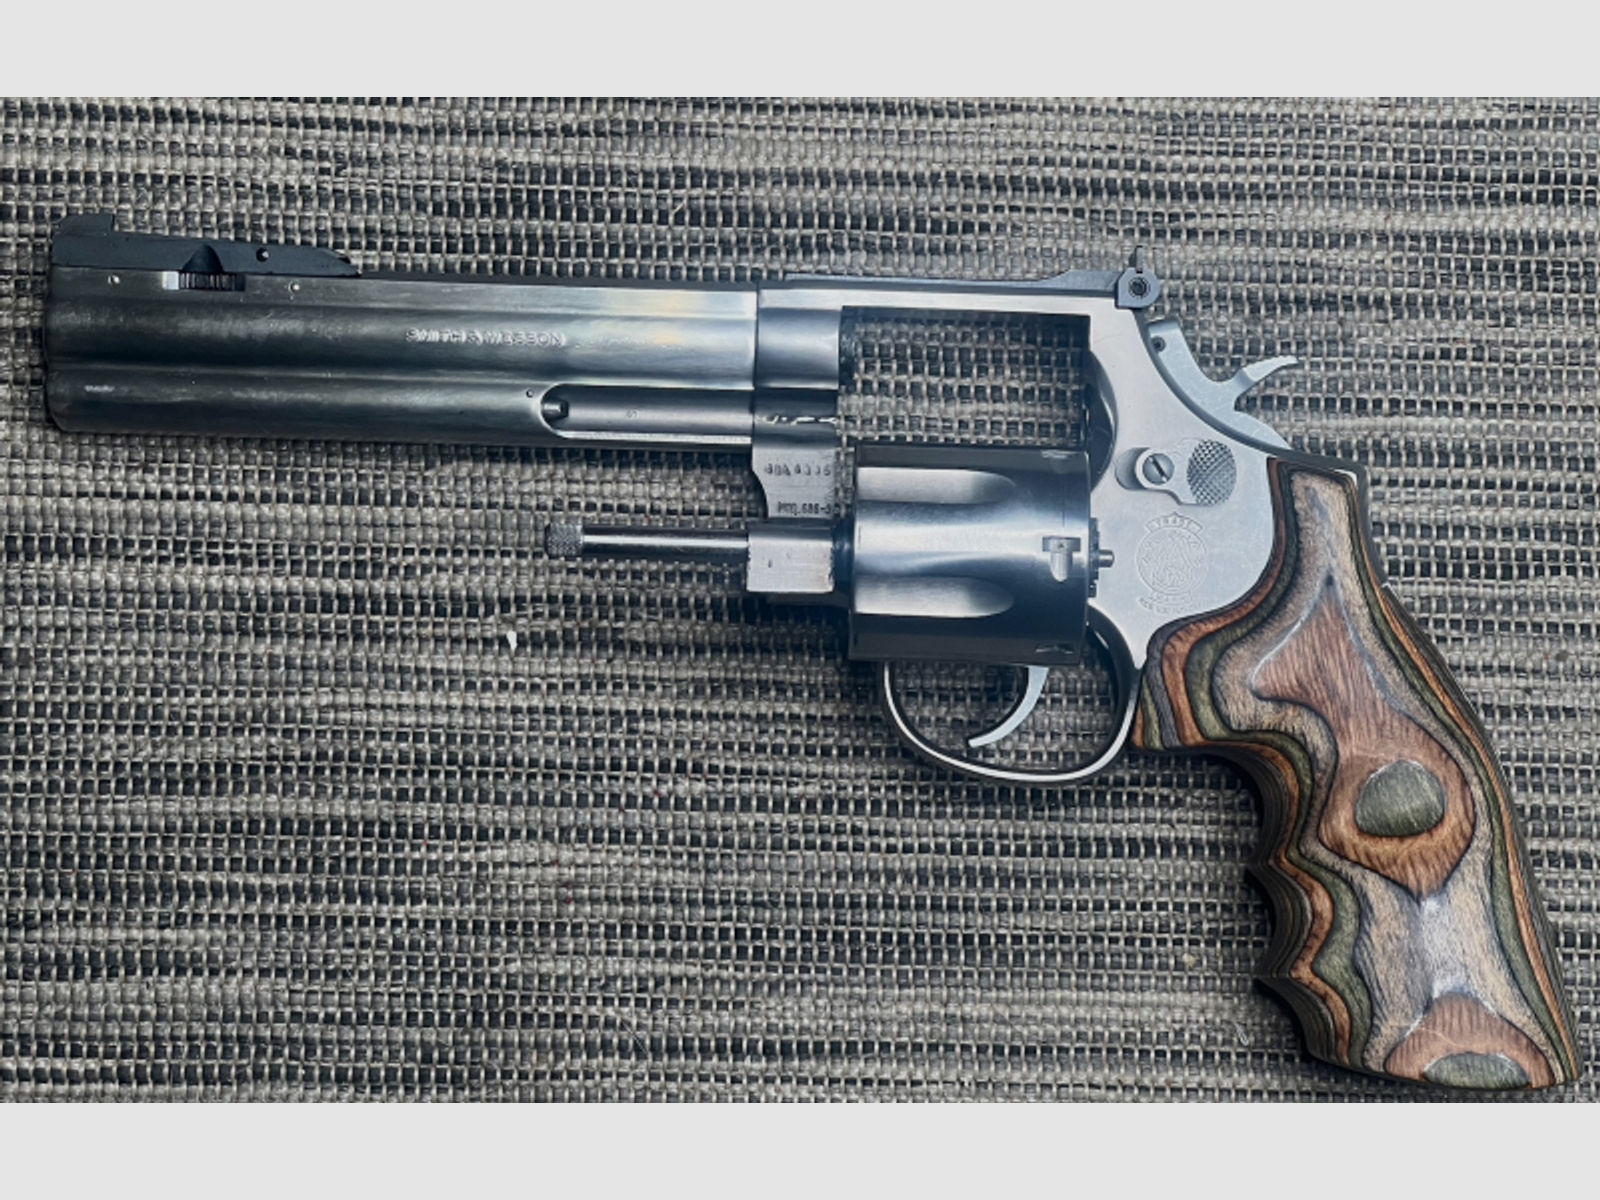 Smith & Wesson 686-Serie 3, AF, Kaliber 357 Mag.